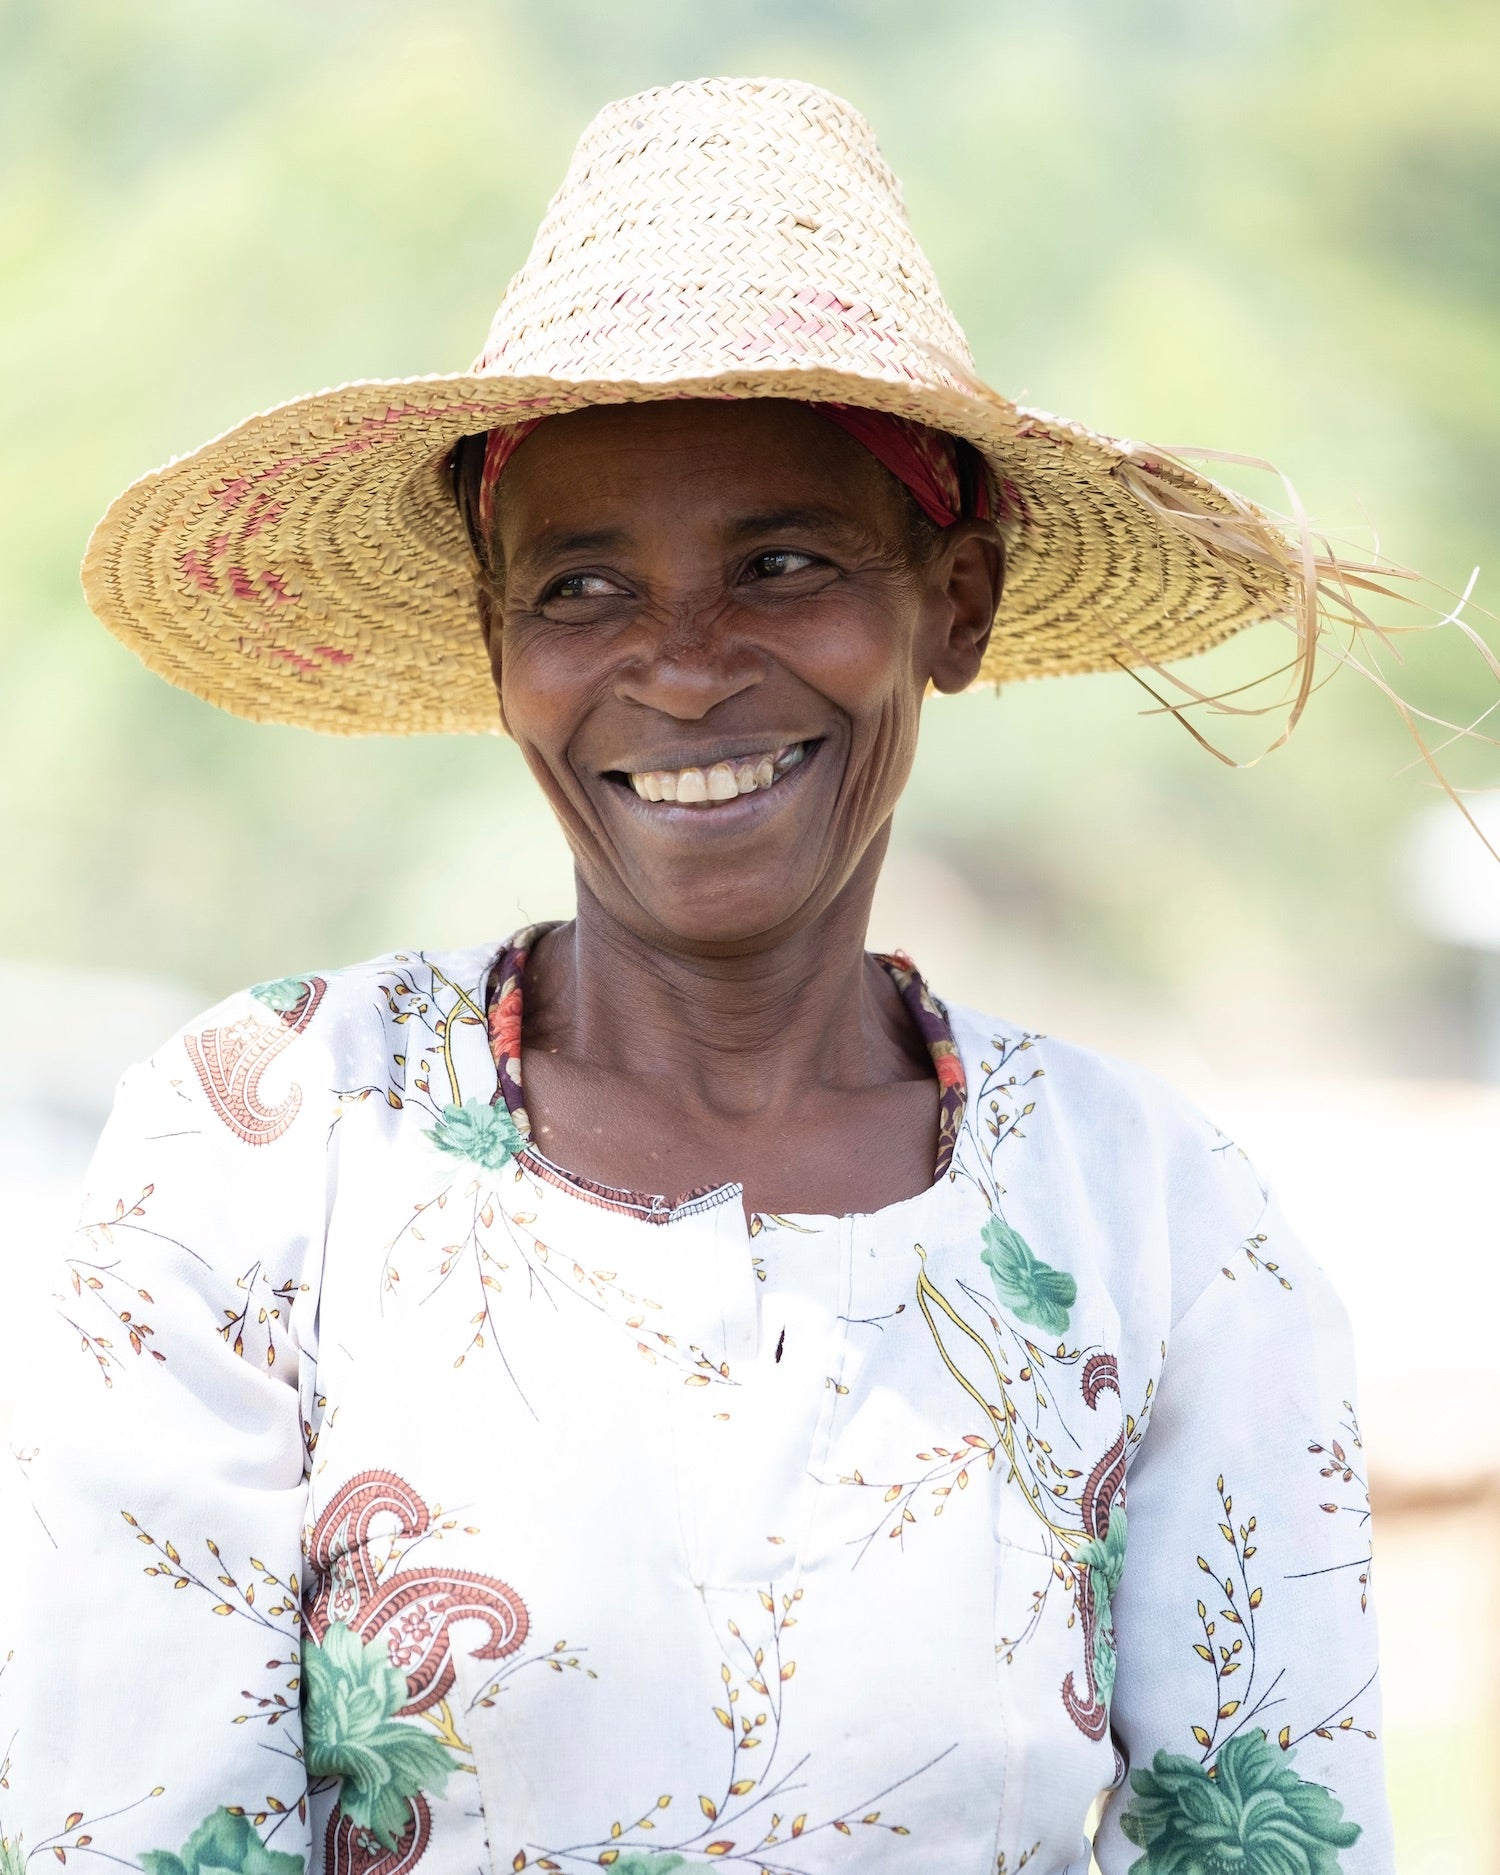 nuruwomen - Mit nachhaltigem Kaffee Frauenprojekte in Äthiopien unterstützen.